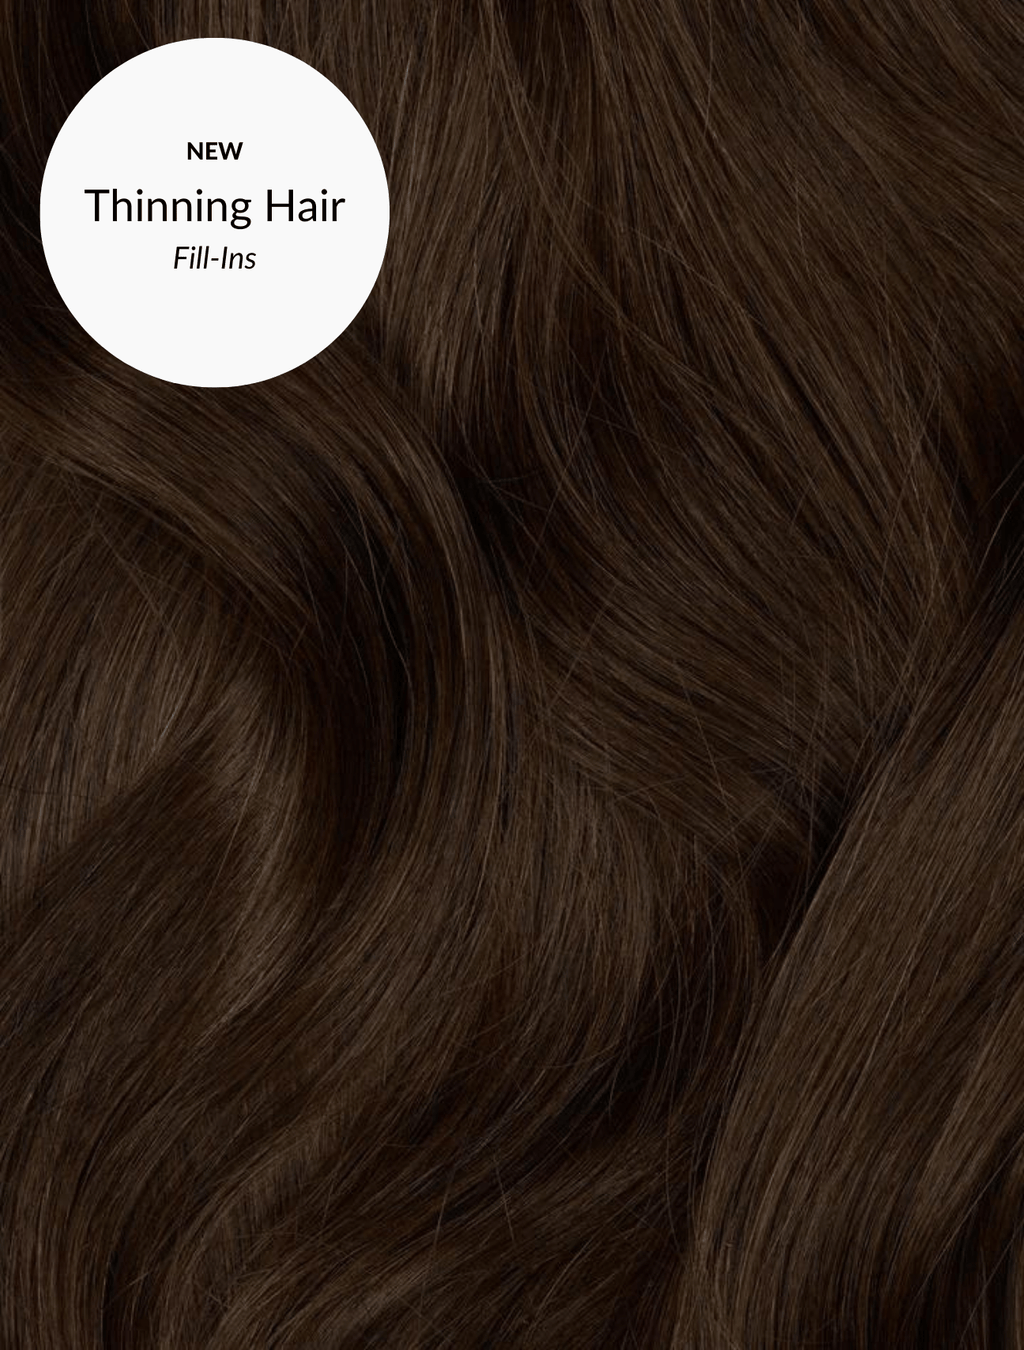 Medium Brown (2B) Thin Hair Fill-Ins